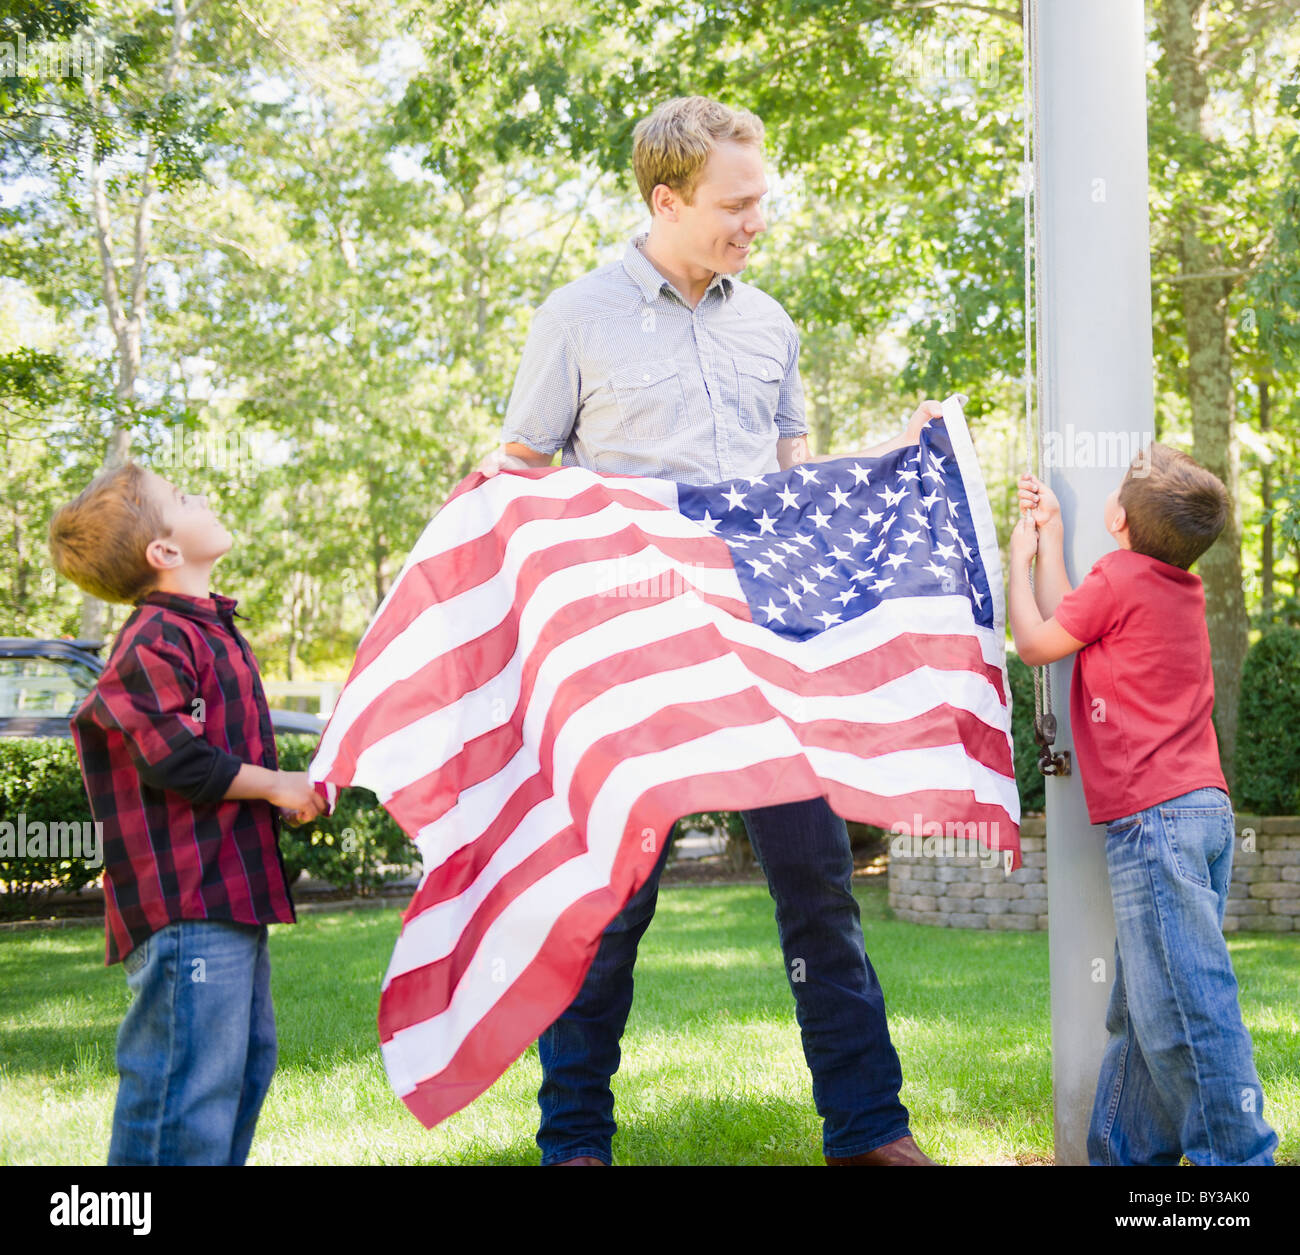 USA (New York), Flandre, père de deux garçons (4-5, 8-9) hanging drapeau américain sur perche Banque D'Images